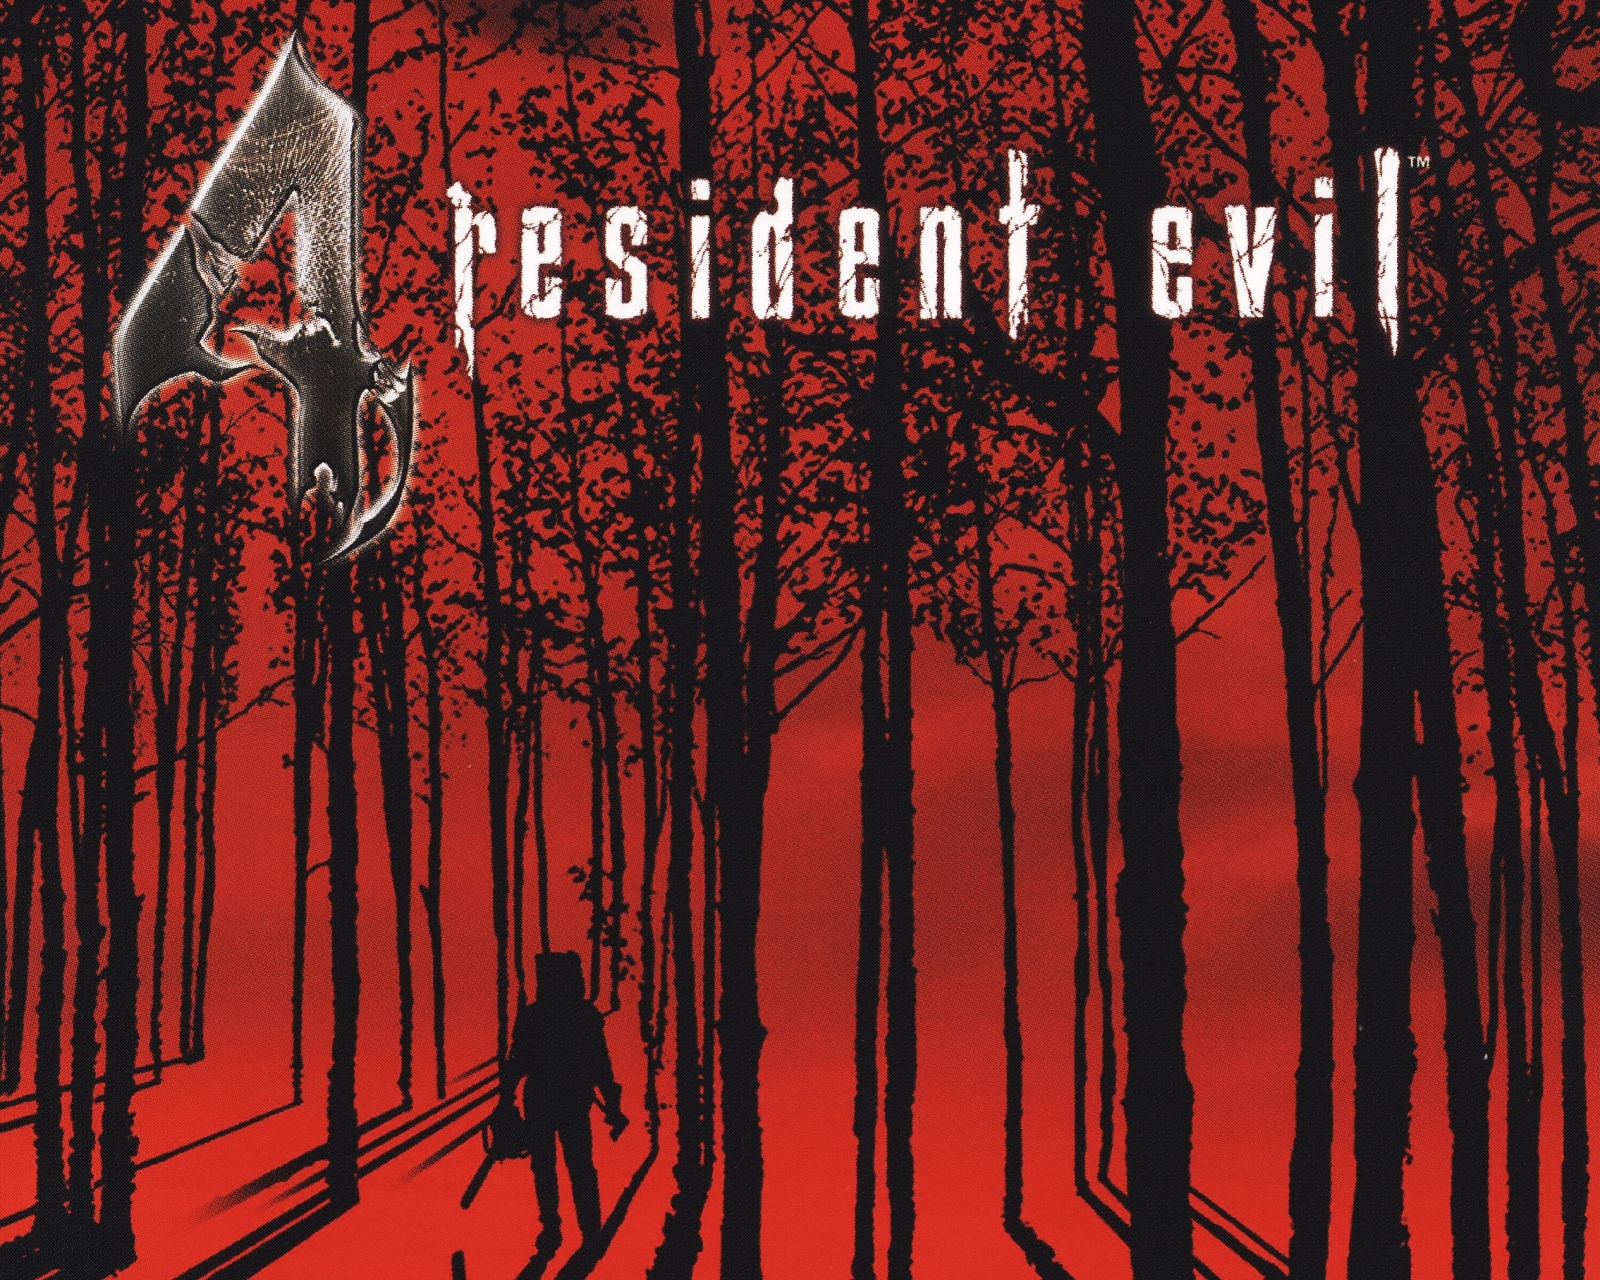 Resident Evil 4 (2023) Phone Wallpaper - Mobile Abyss